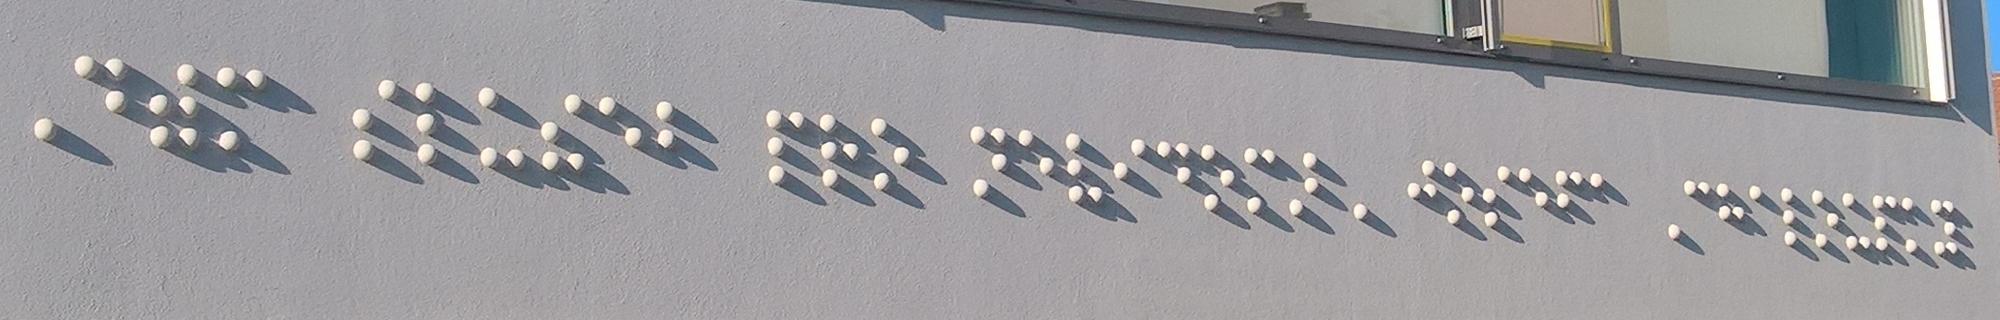 na průčelí unikátní dekorační prvek v podobě plastického nápisu v Braillově písmu.